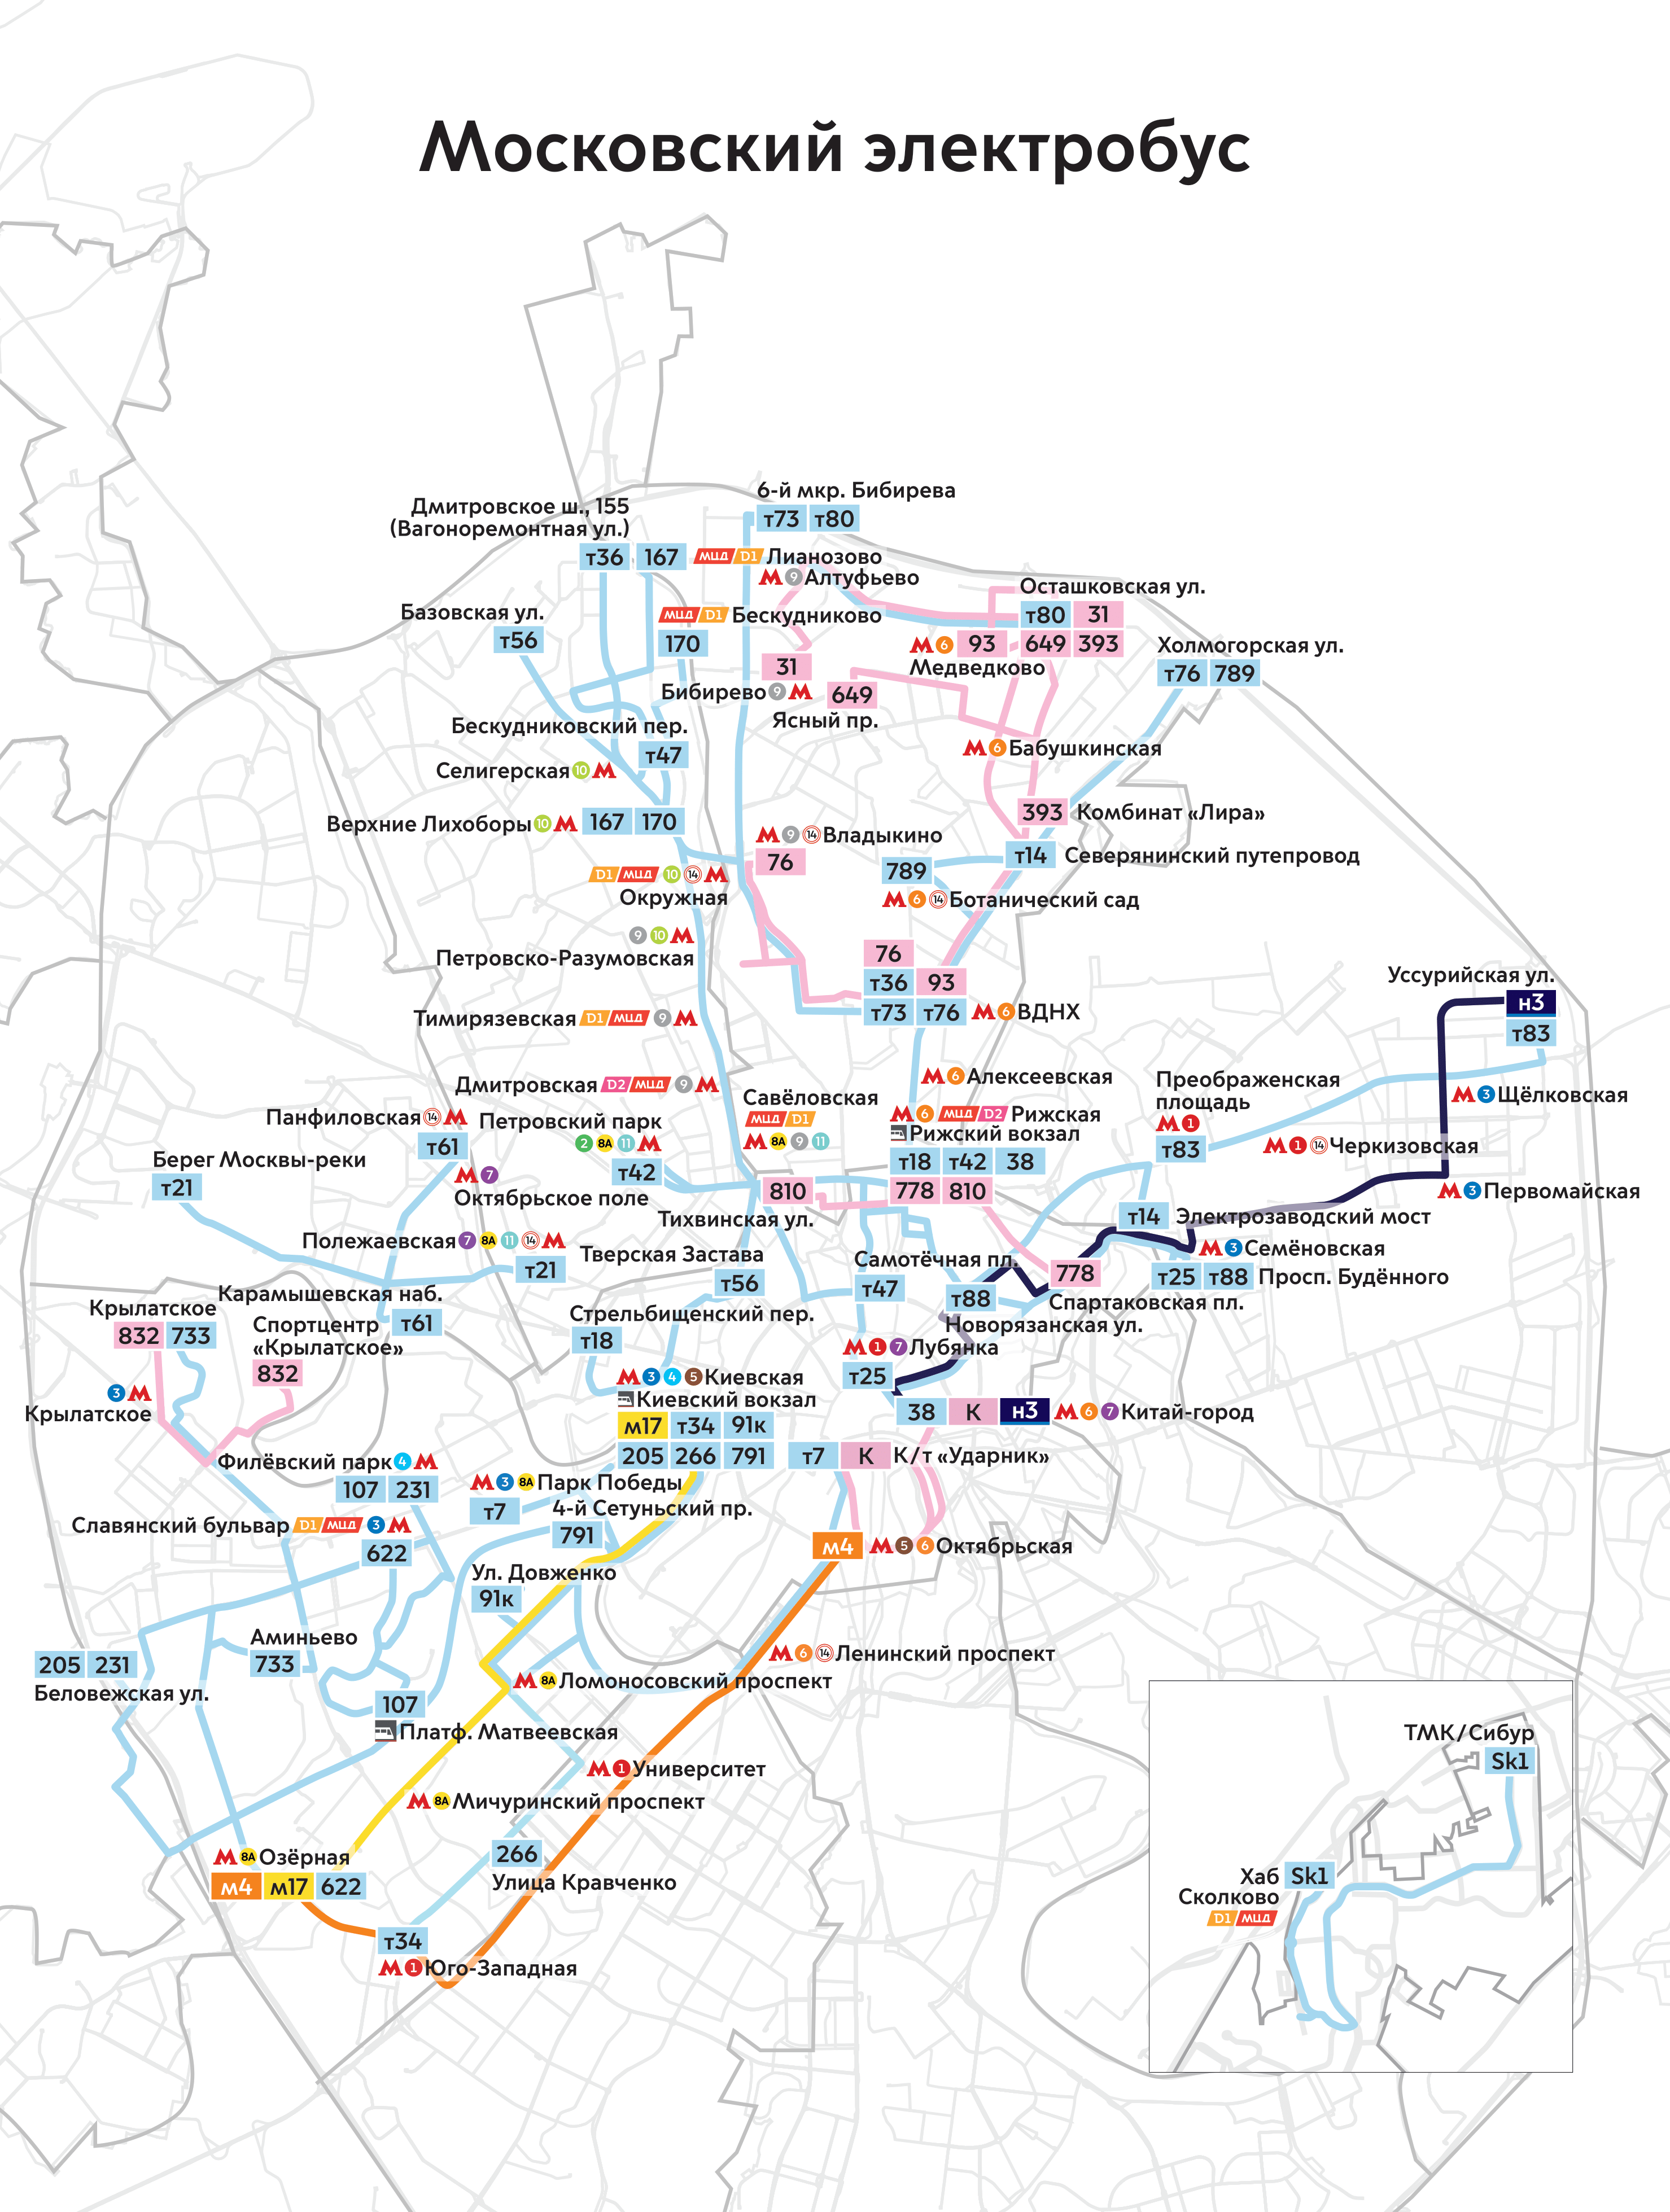 Moscow — Maps of Autonomous Electric Bus Lines